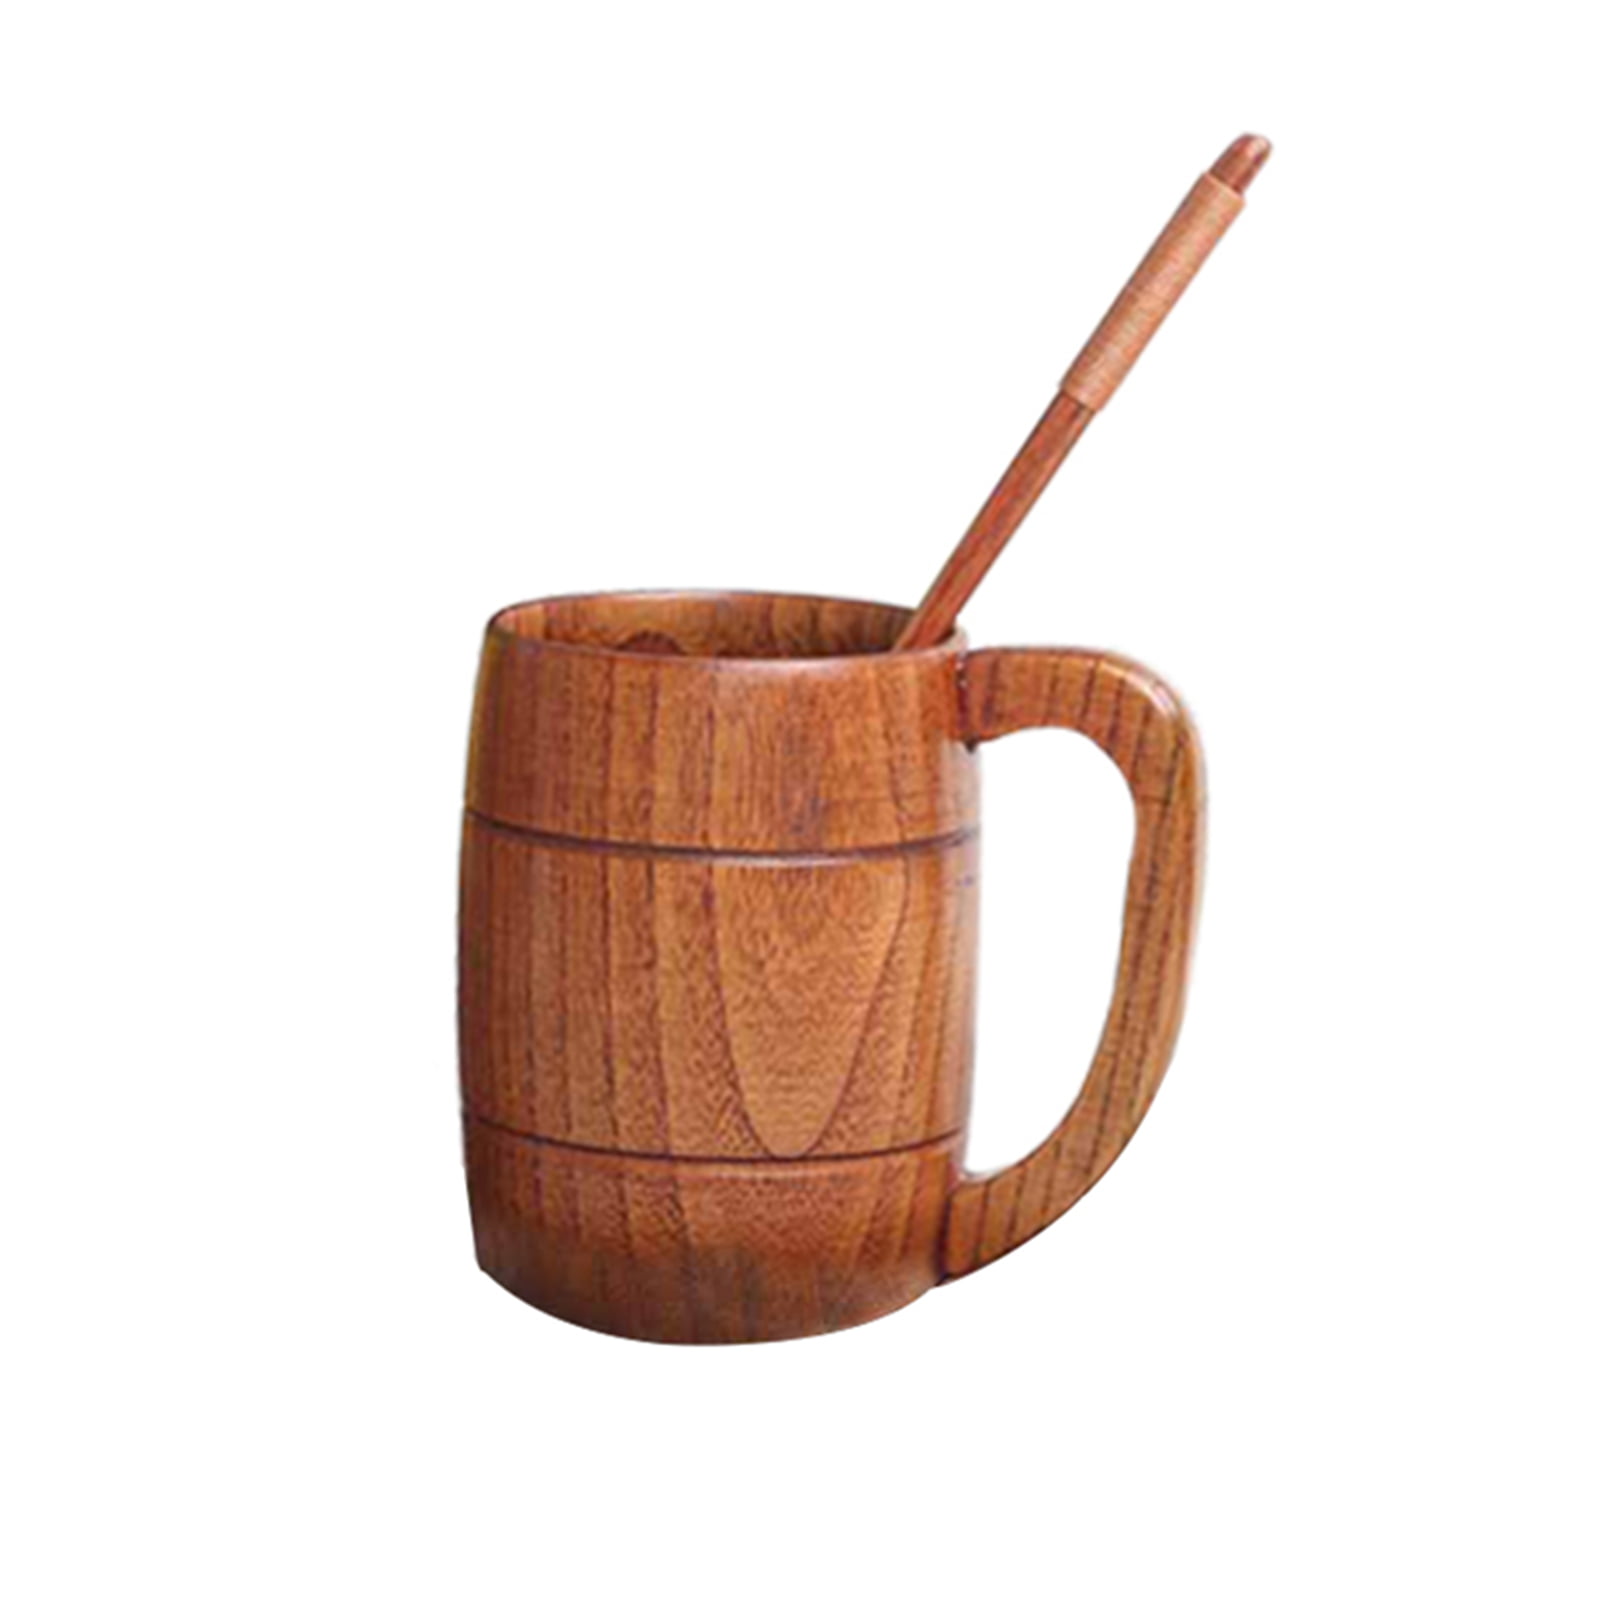 Vintage Bar Cup Great Beer Gift Ideas Wooden Beer Tankard for Unisex Stainless Steel Beer Mug With Wood,Handmade Wooden Beer Mug with 18oz-500ml Beer Mug Wood,Wooden Coffee Mug Wooden Mug